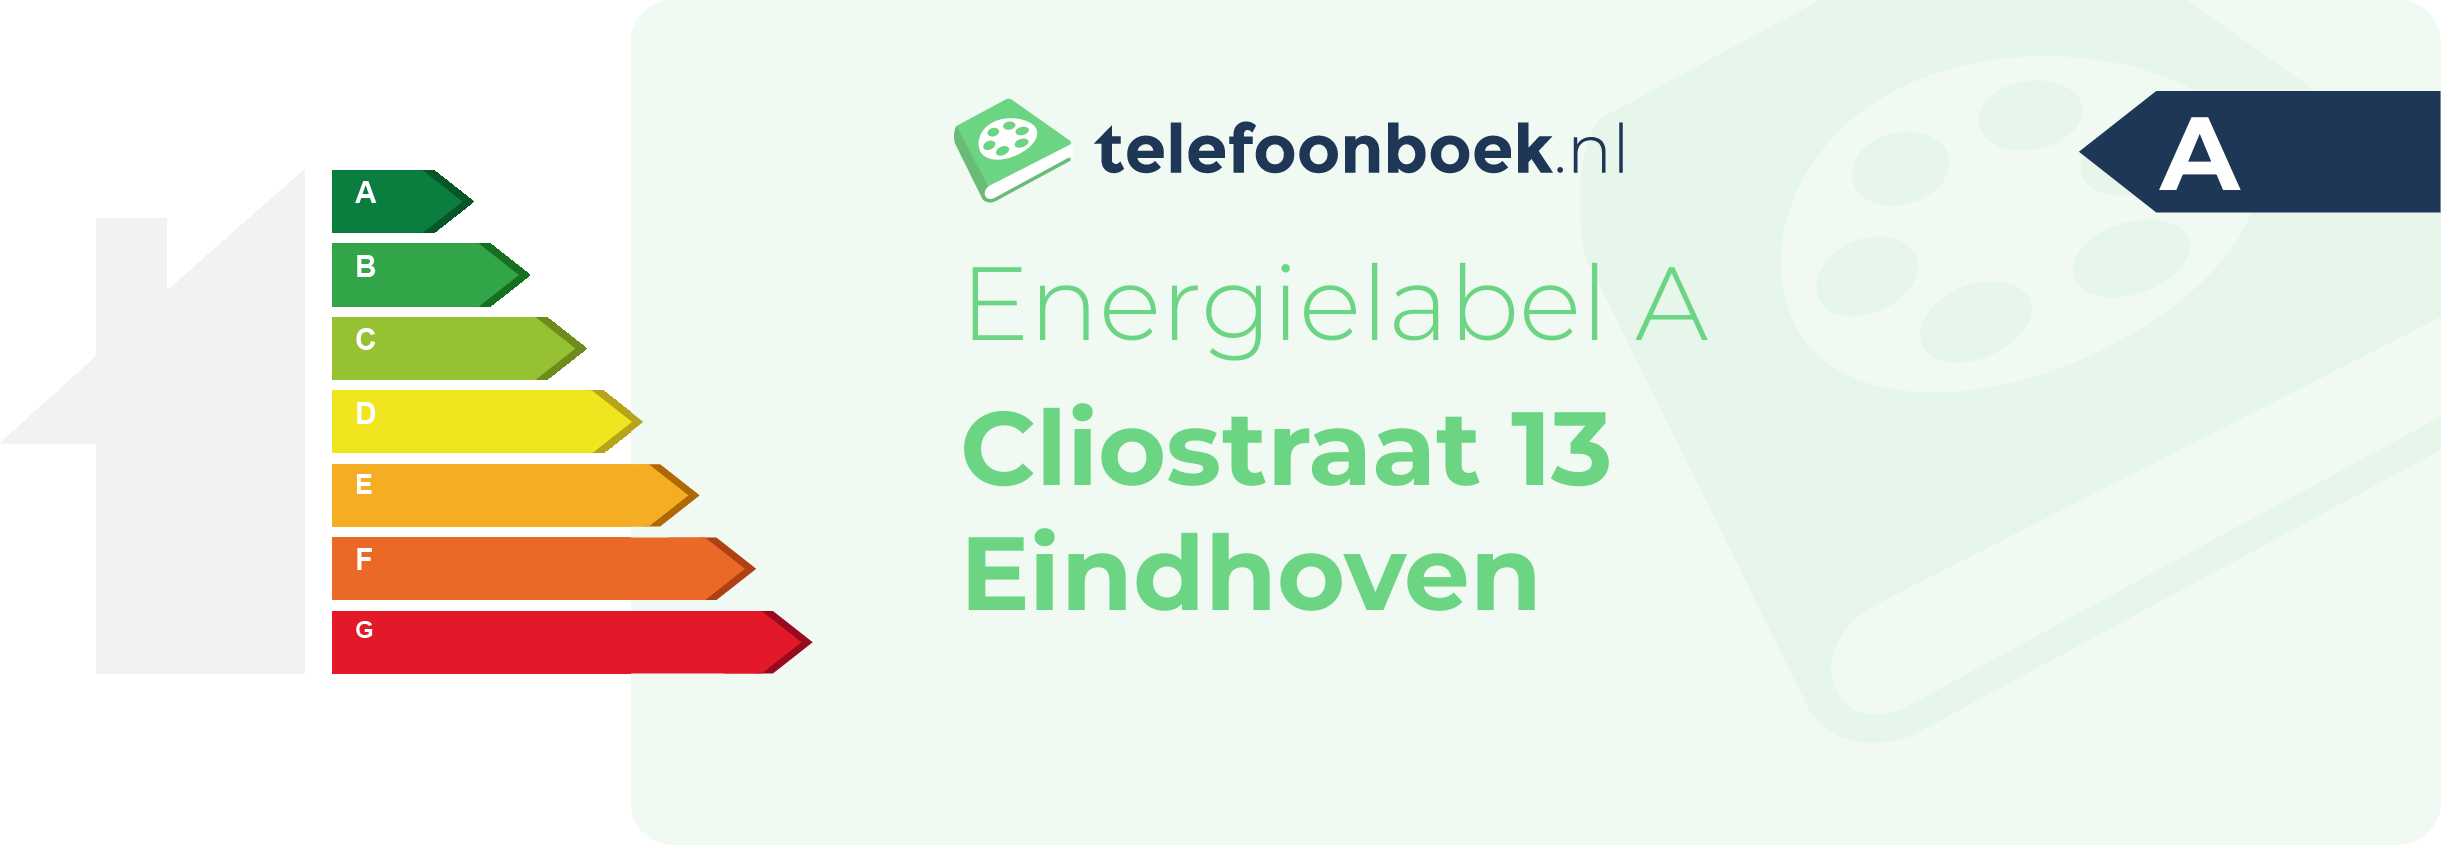 Energielabel Cliostraat 13 Eindhoven